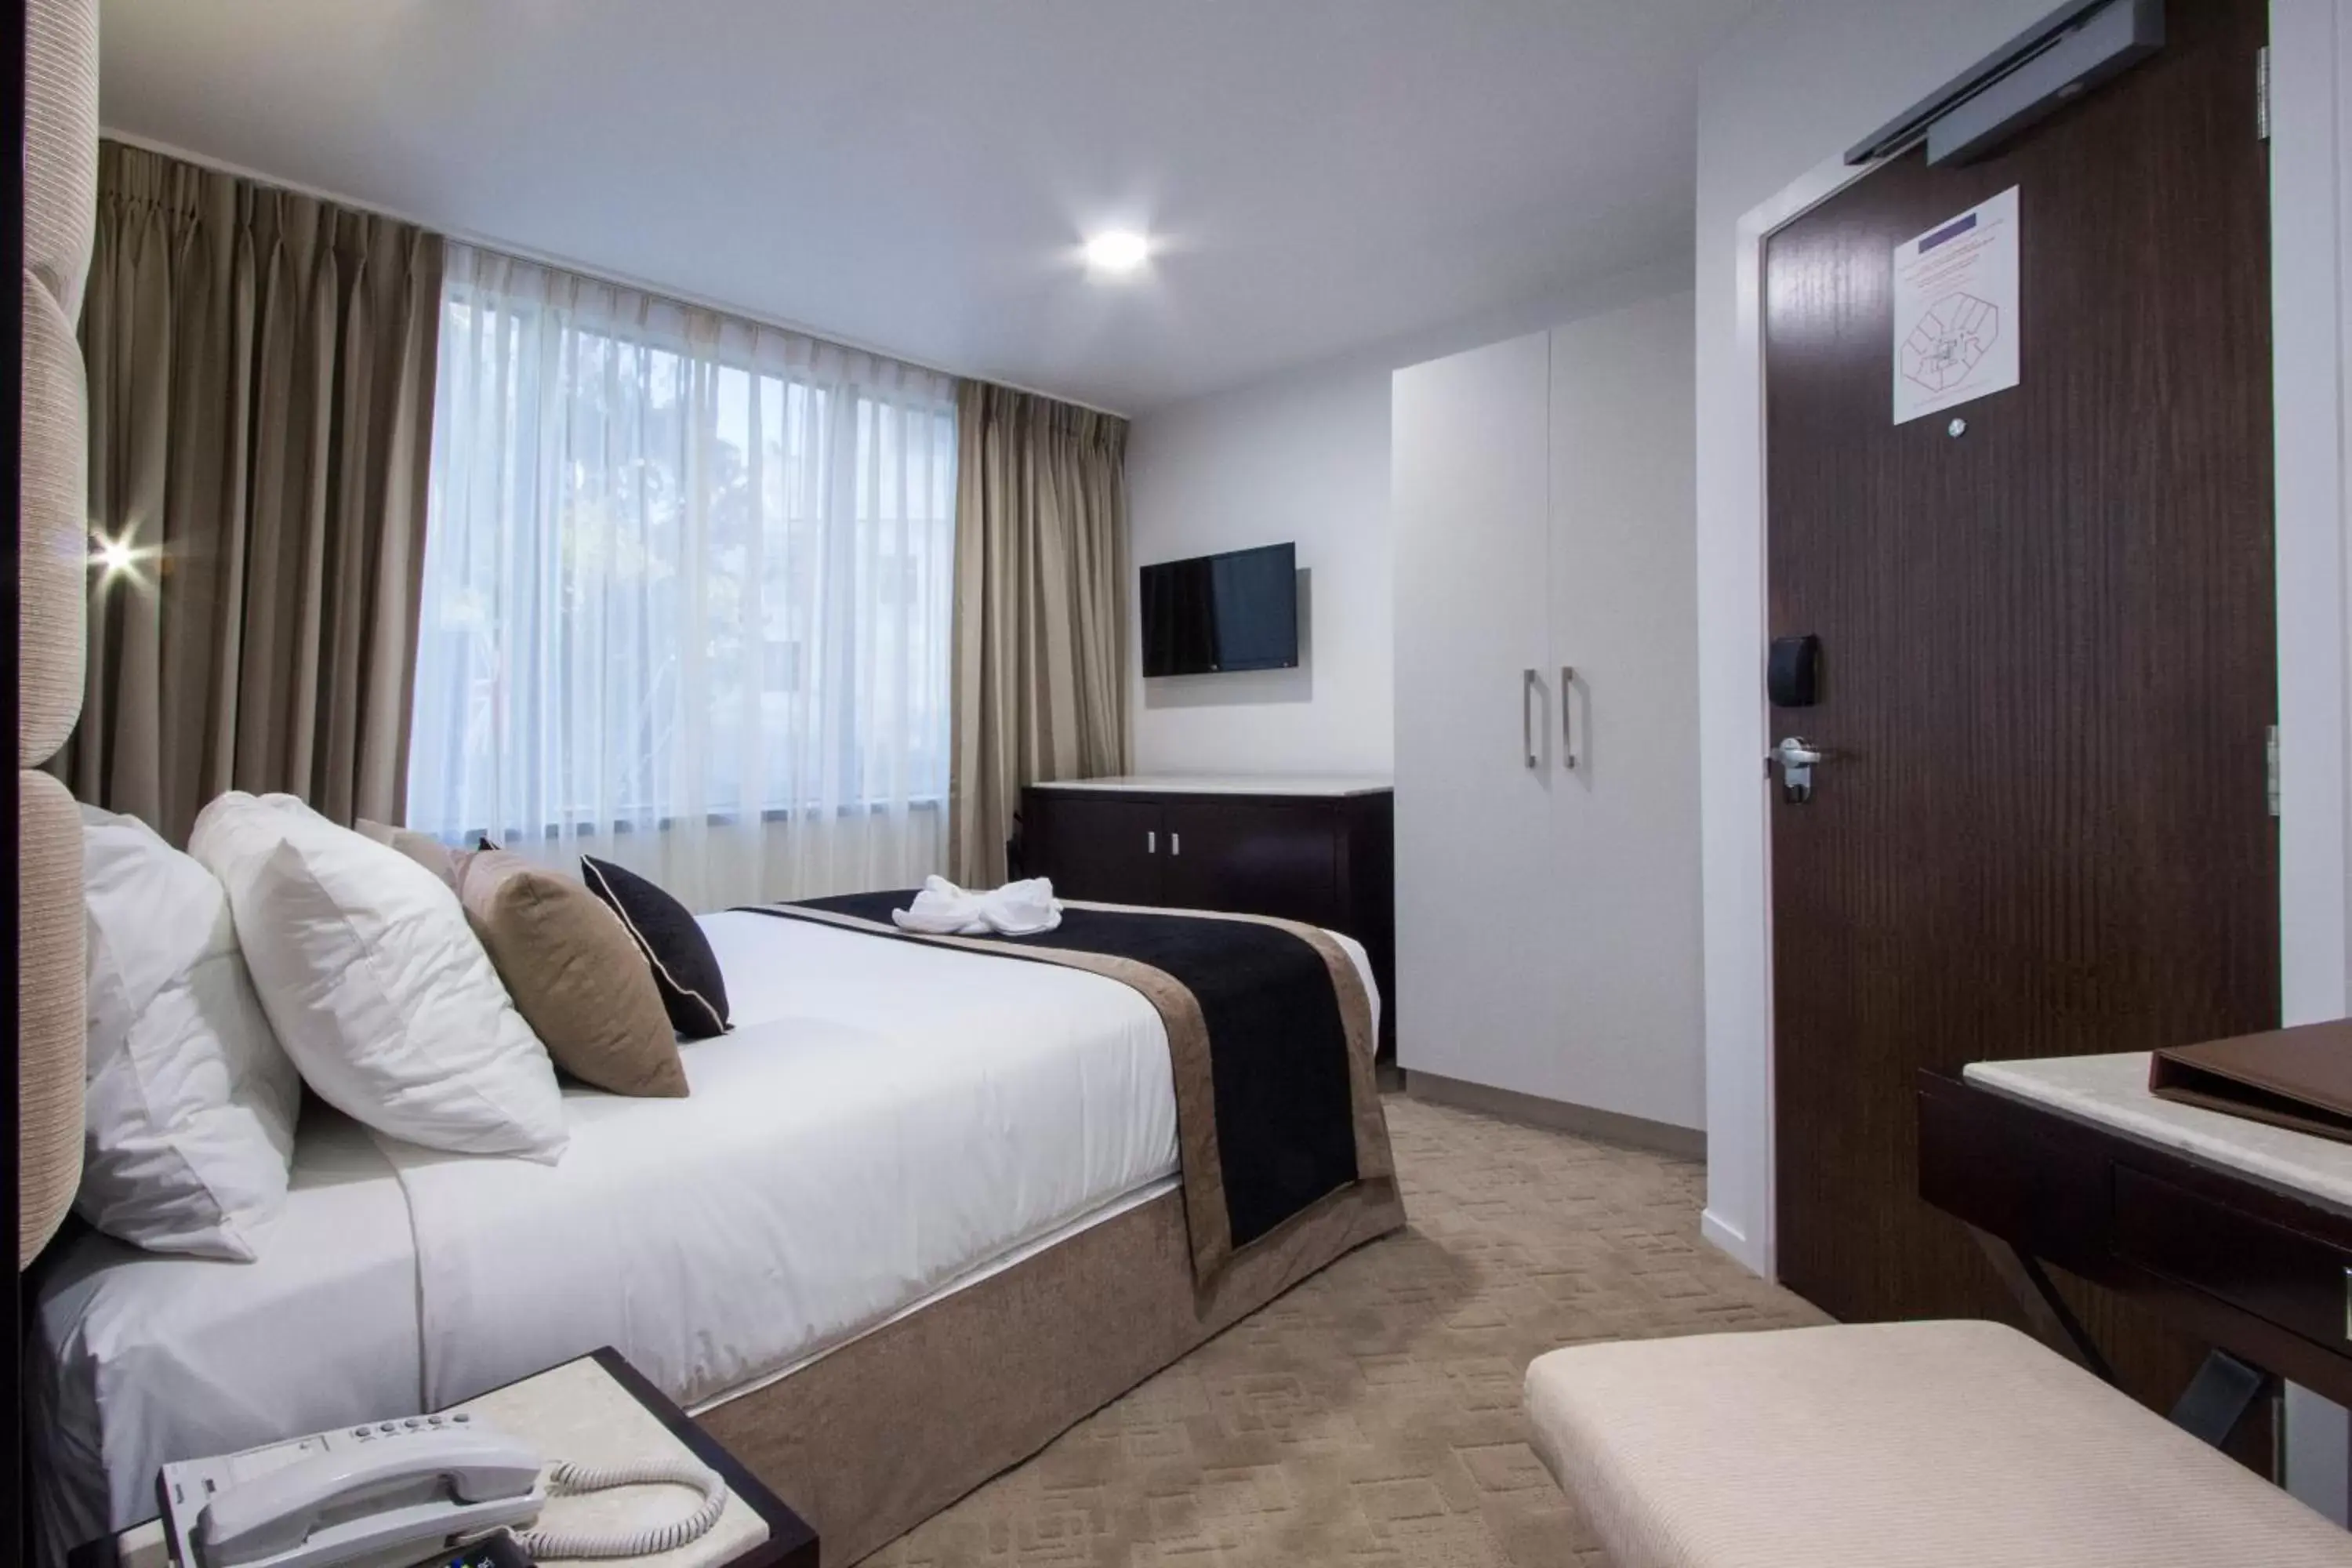 Bed, Room Photo in VR Queen Street Hotel & Suites